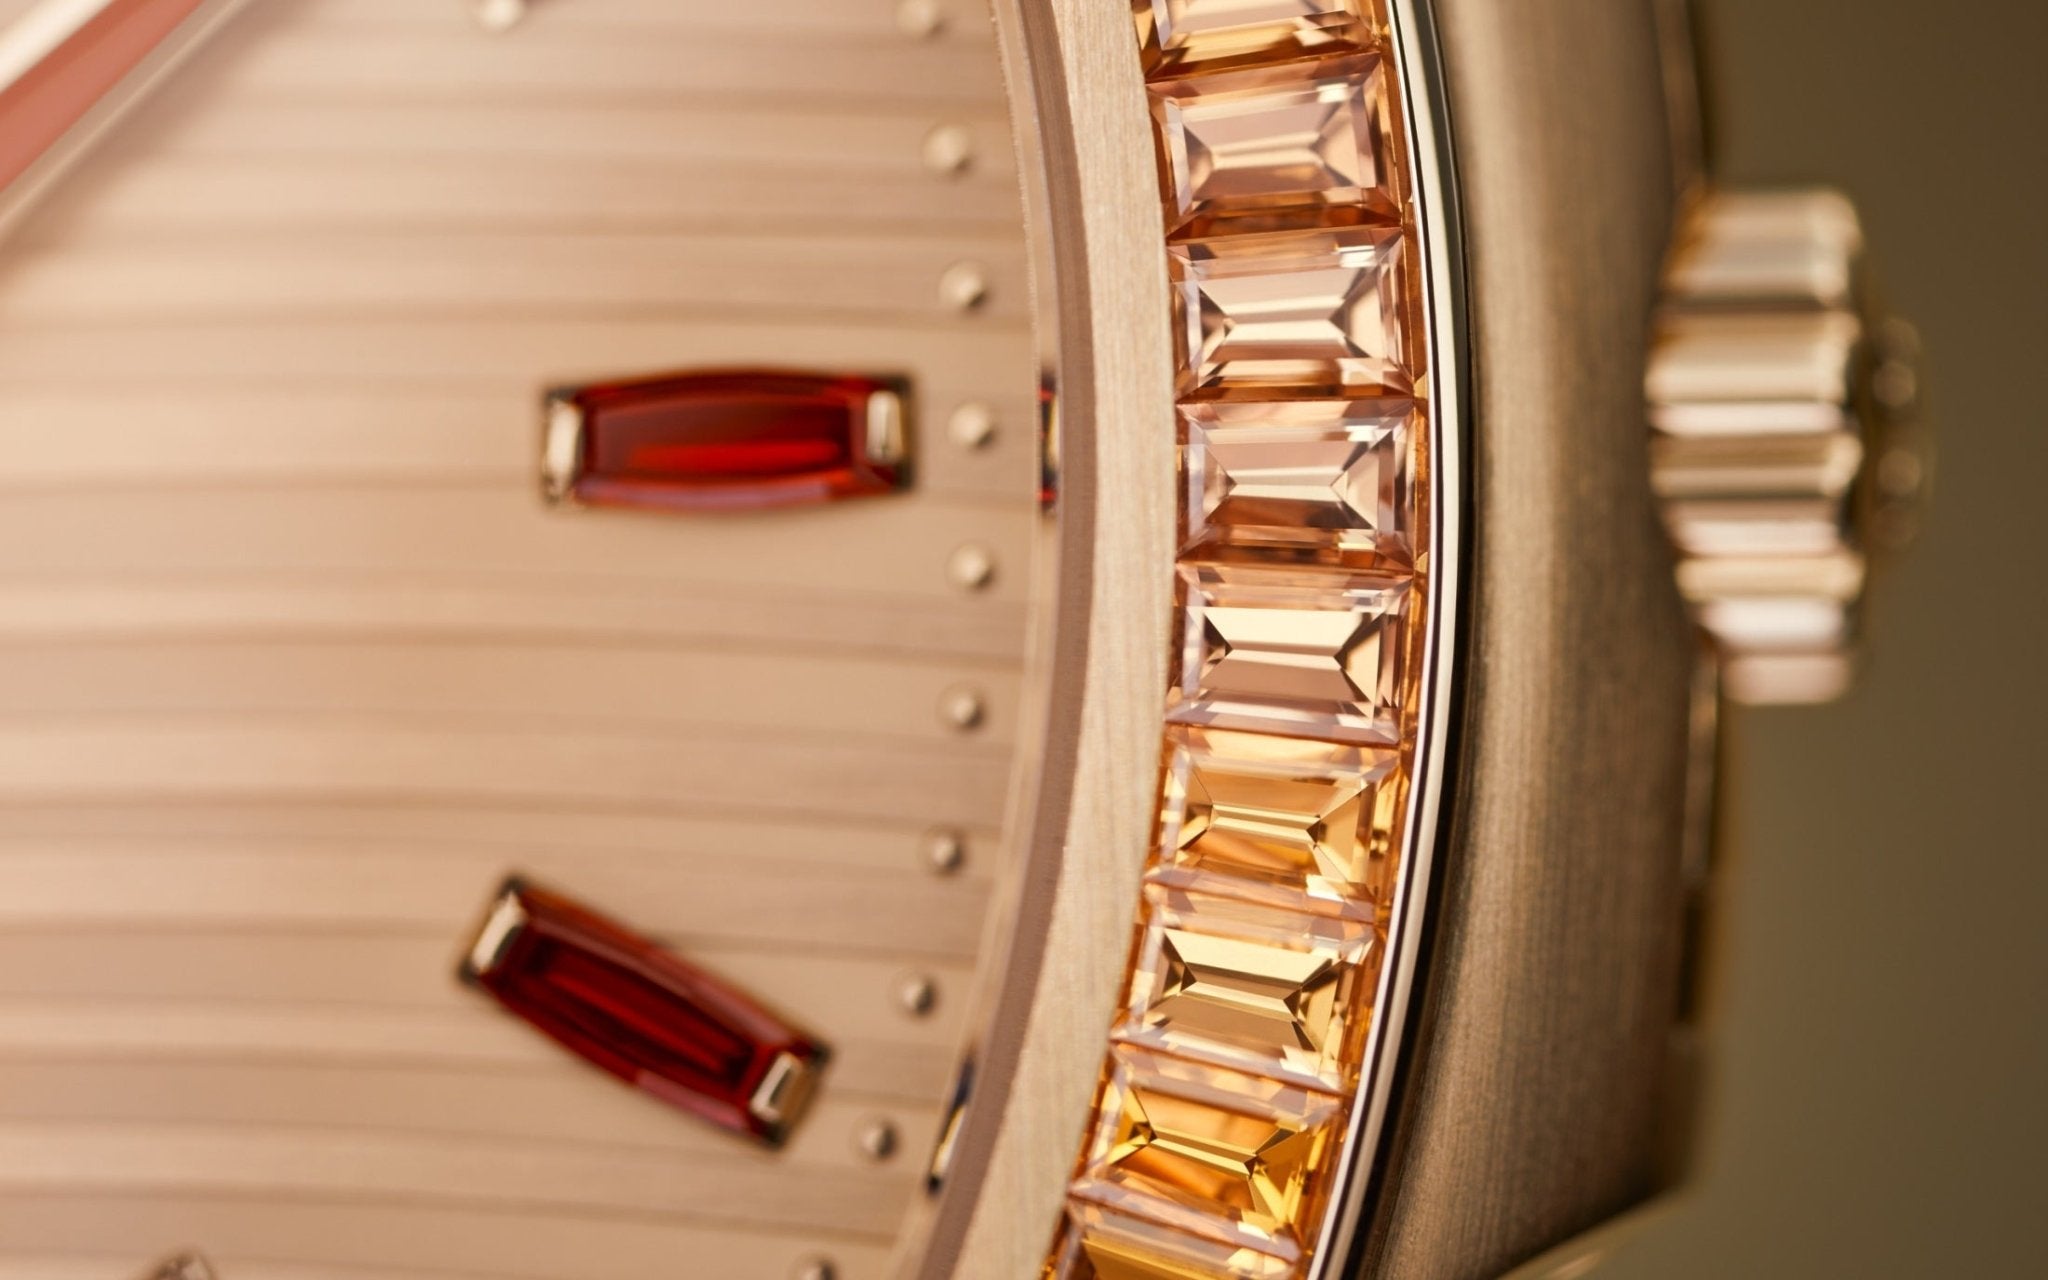 Patek Philippe Nautilus Automatic Rose Gold Baguette Cognac Bezel 7118/1300R-001 - WatchesOff5thWatch